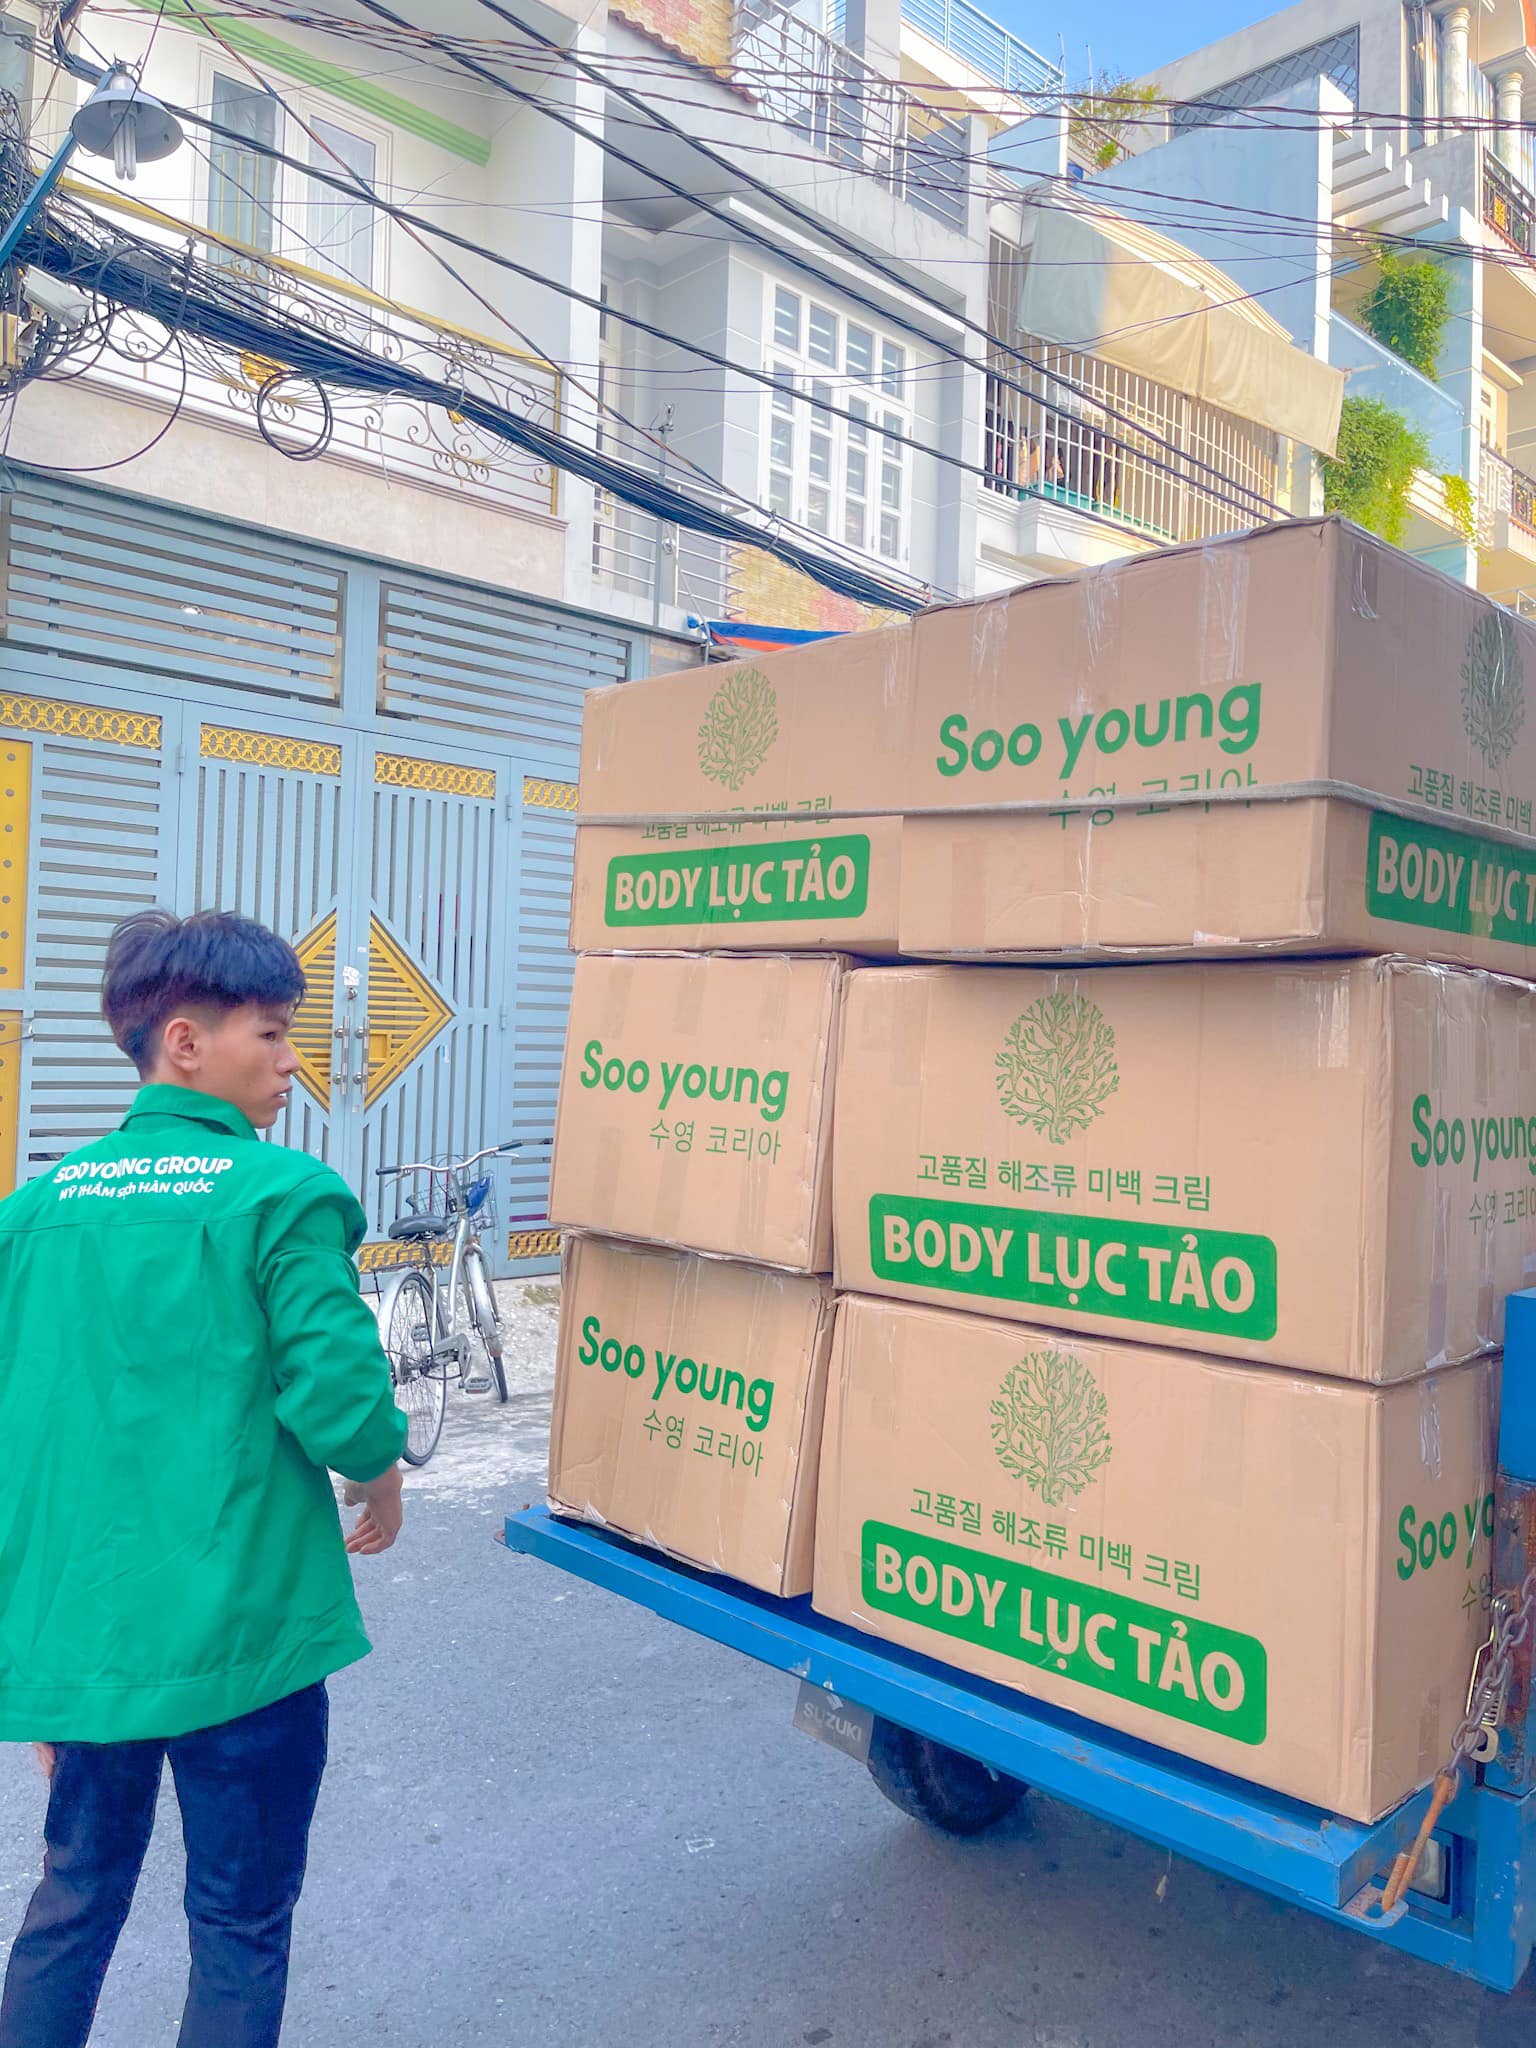 Kem body lục tảo mang thương hiệu Soo Young khẳng định vị trí trong lòng khách hàng